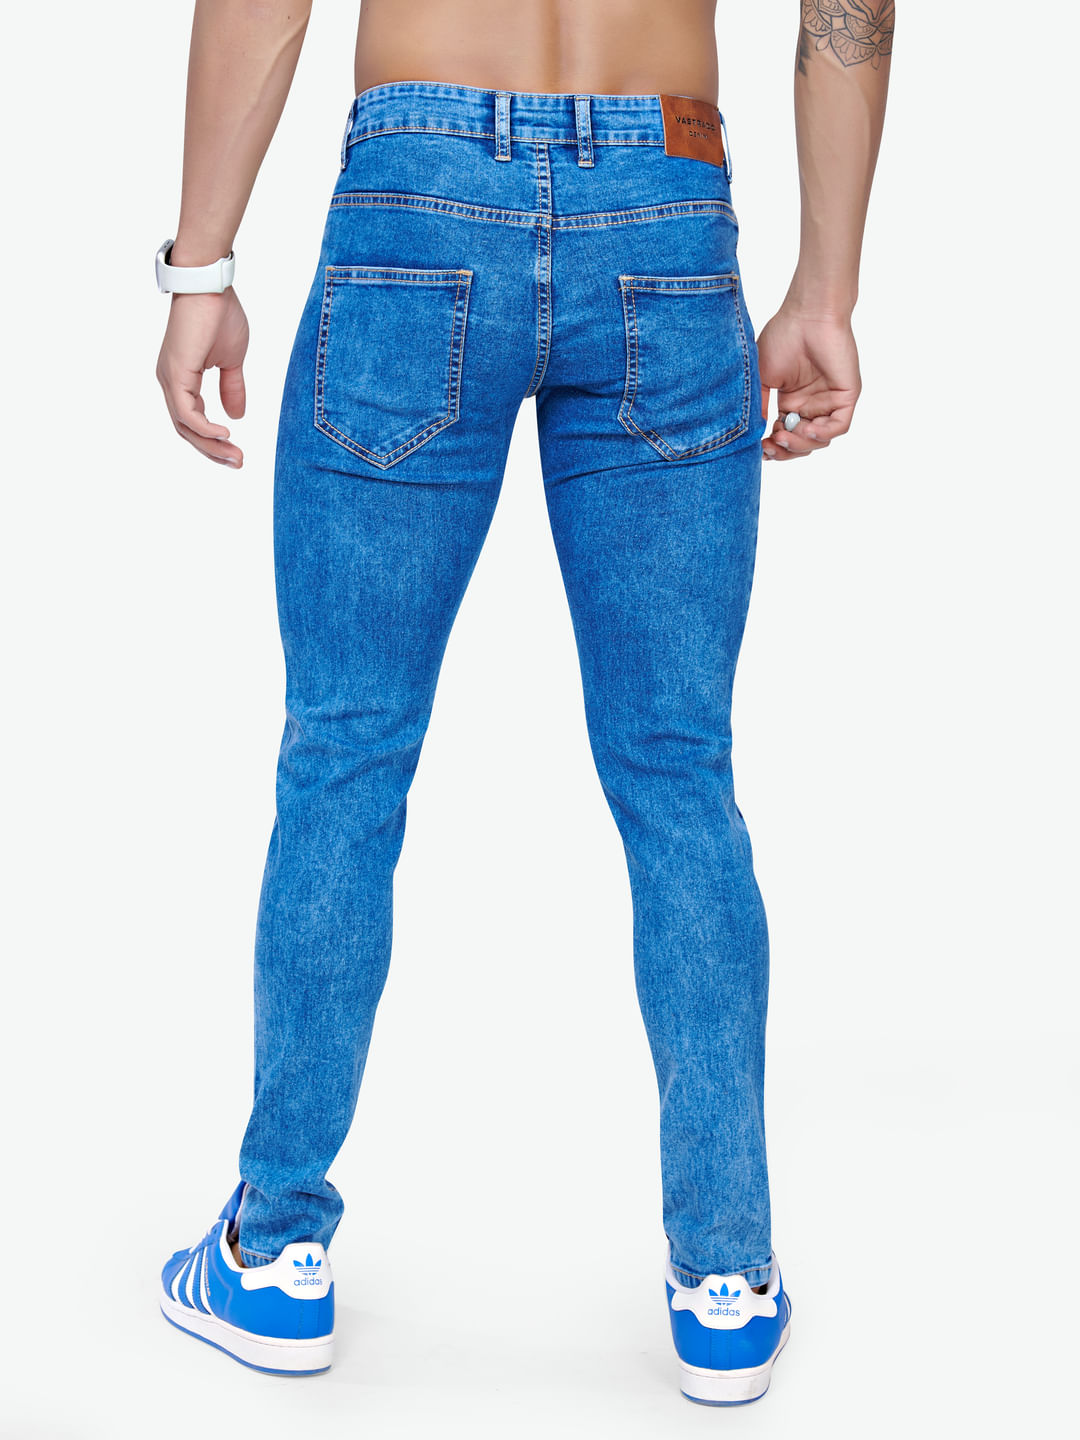 Buy Colour Slim Fit Jeans Online